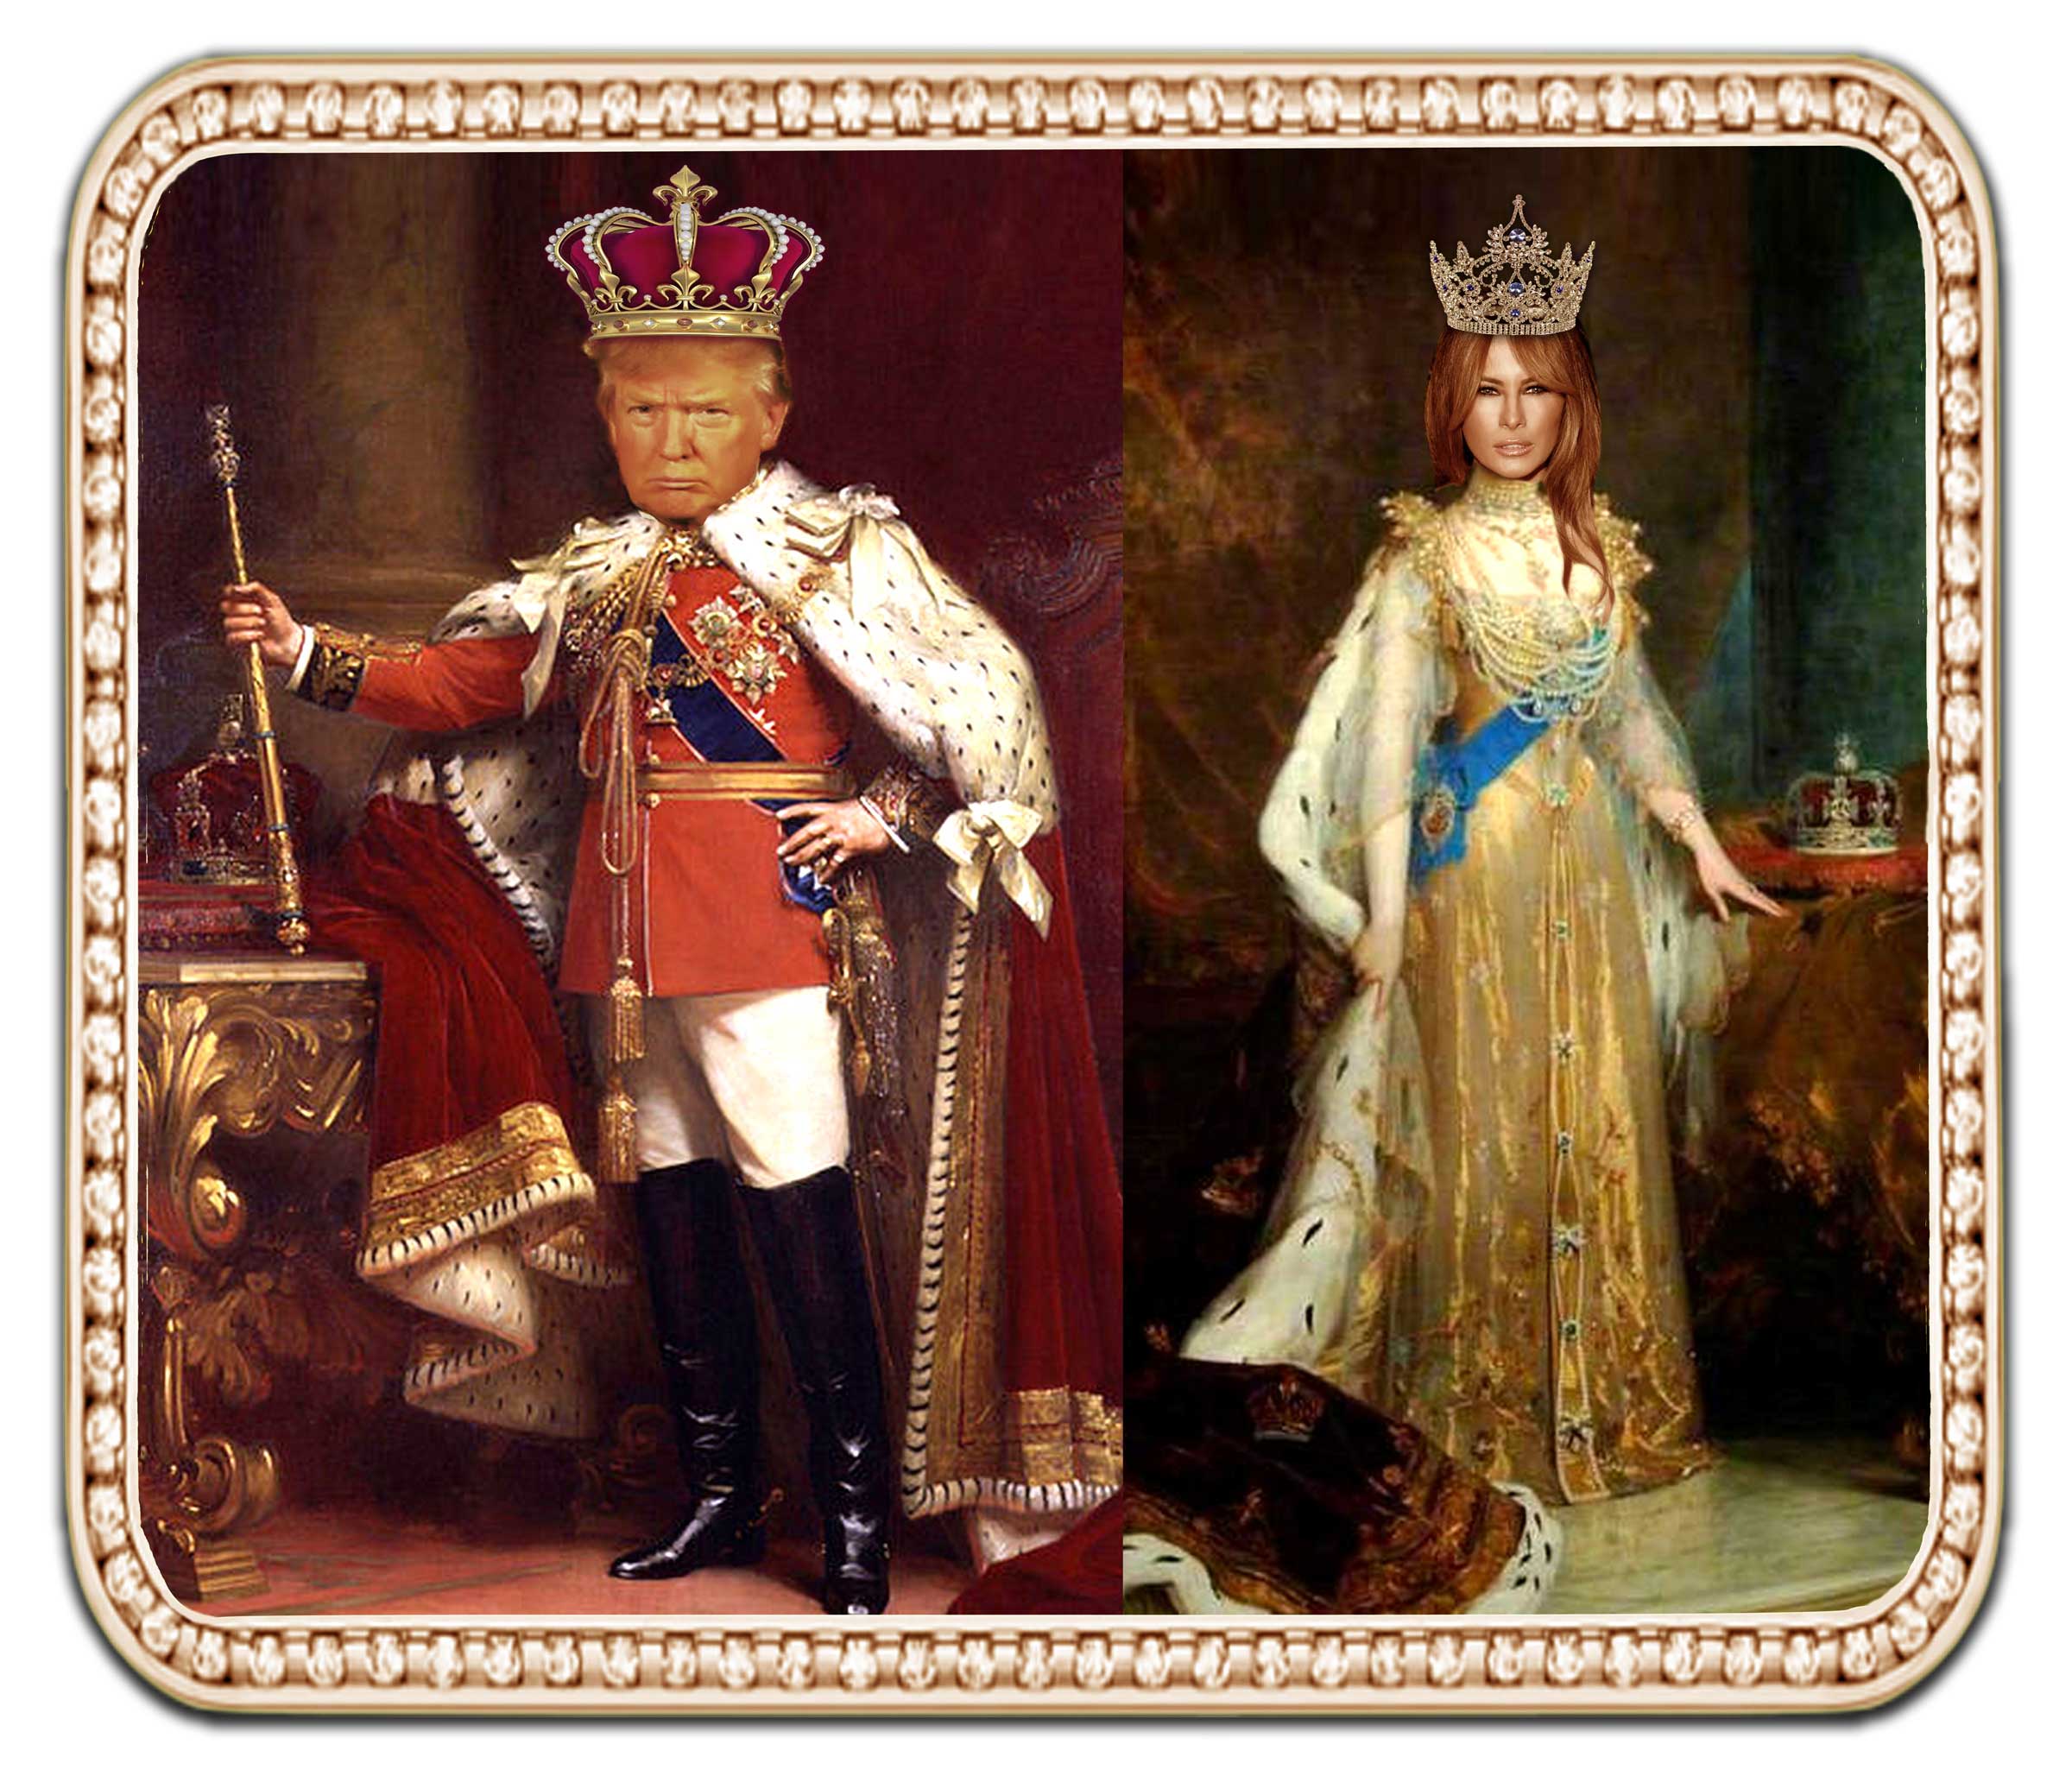 King Donald & Queen Melania